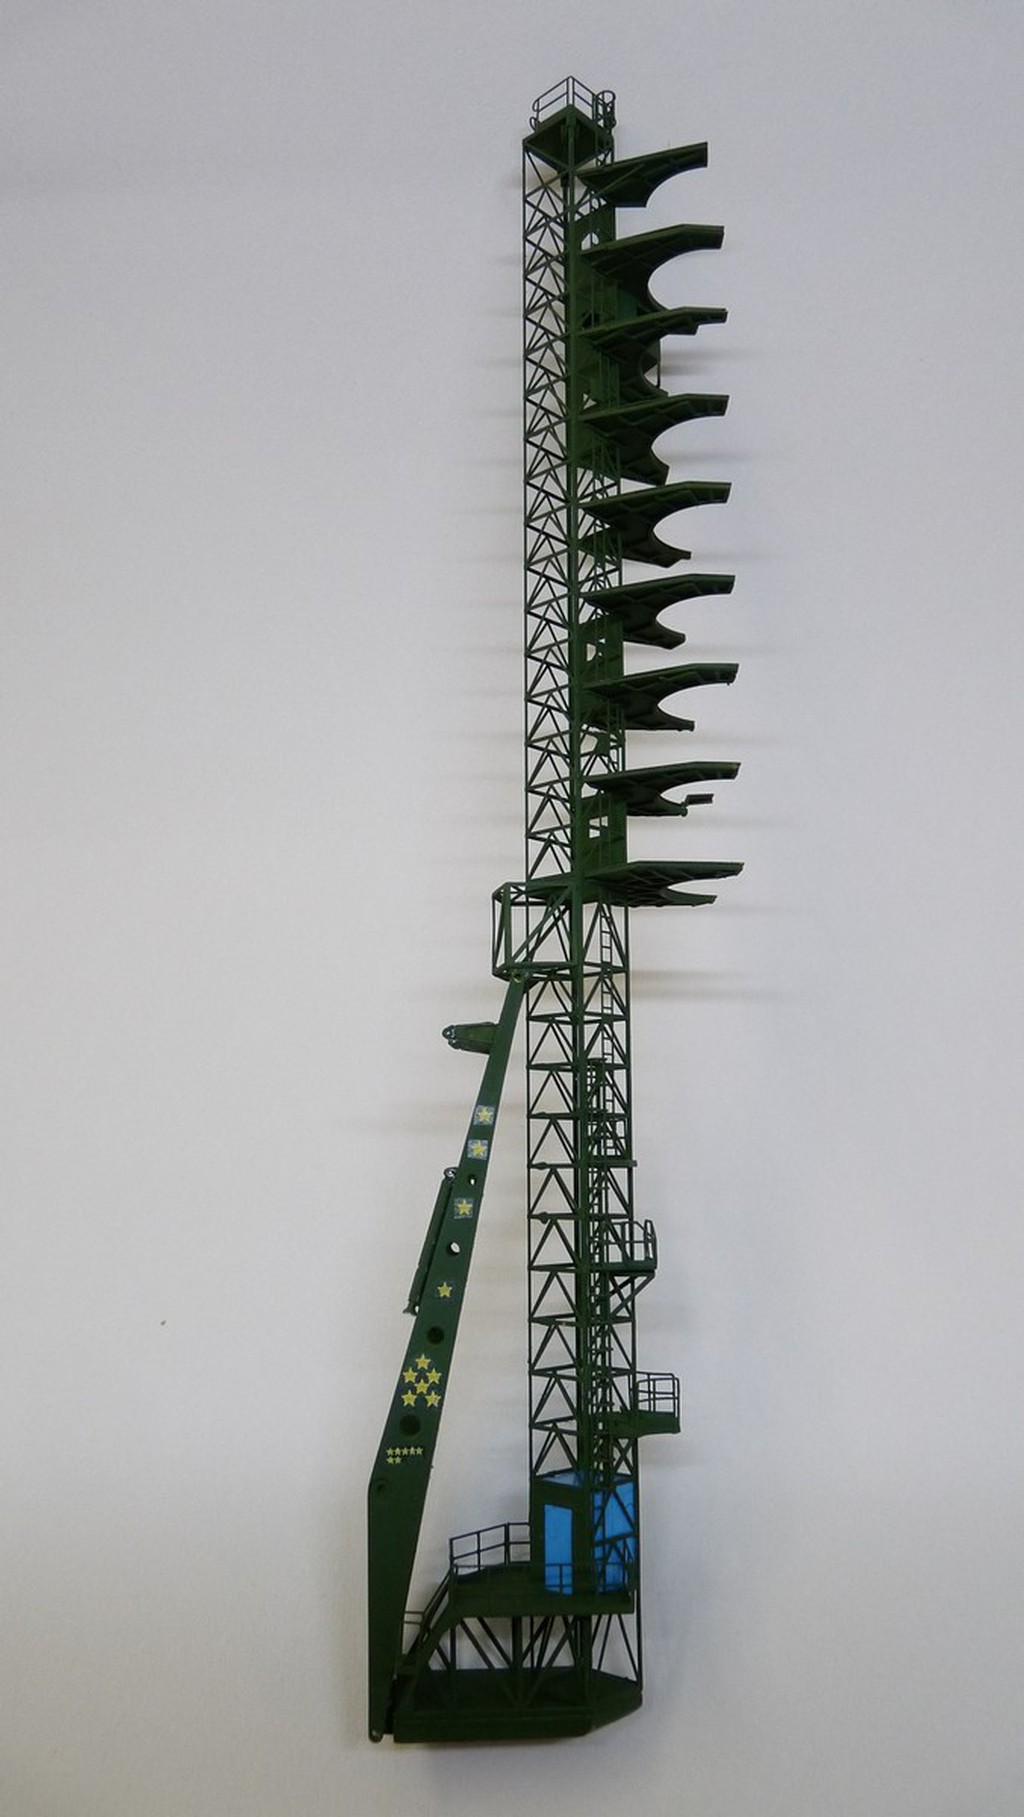 La fusée russe Soyouz TMA-21 sur son pas de tir au 144e  - Page 2 17072607204923134915172485